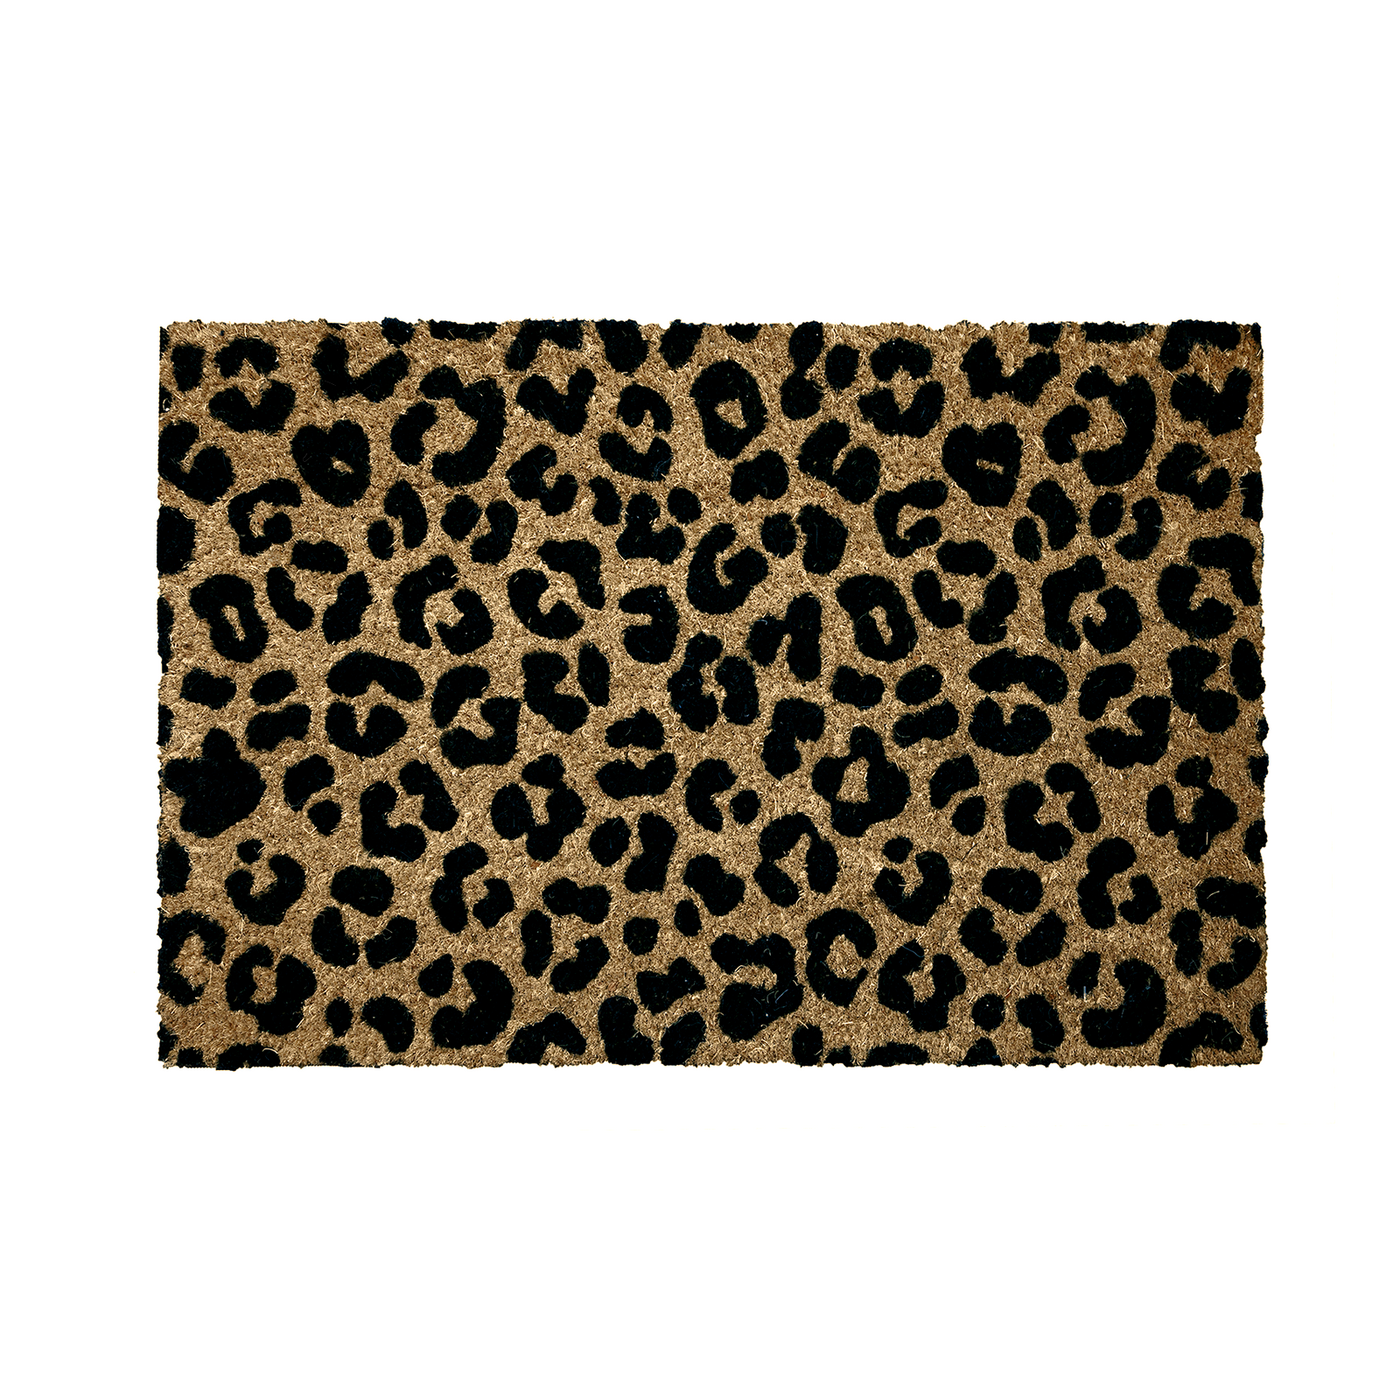 BAHA Natural Coir Fibre Door Mat (Leopard Print) (60 x 40cm)